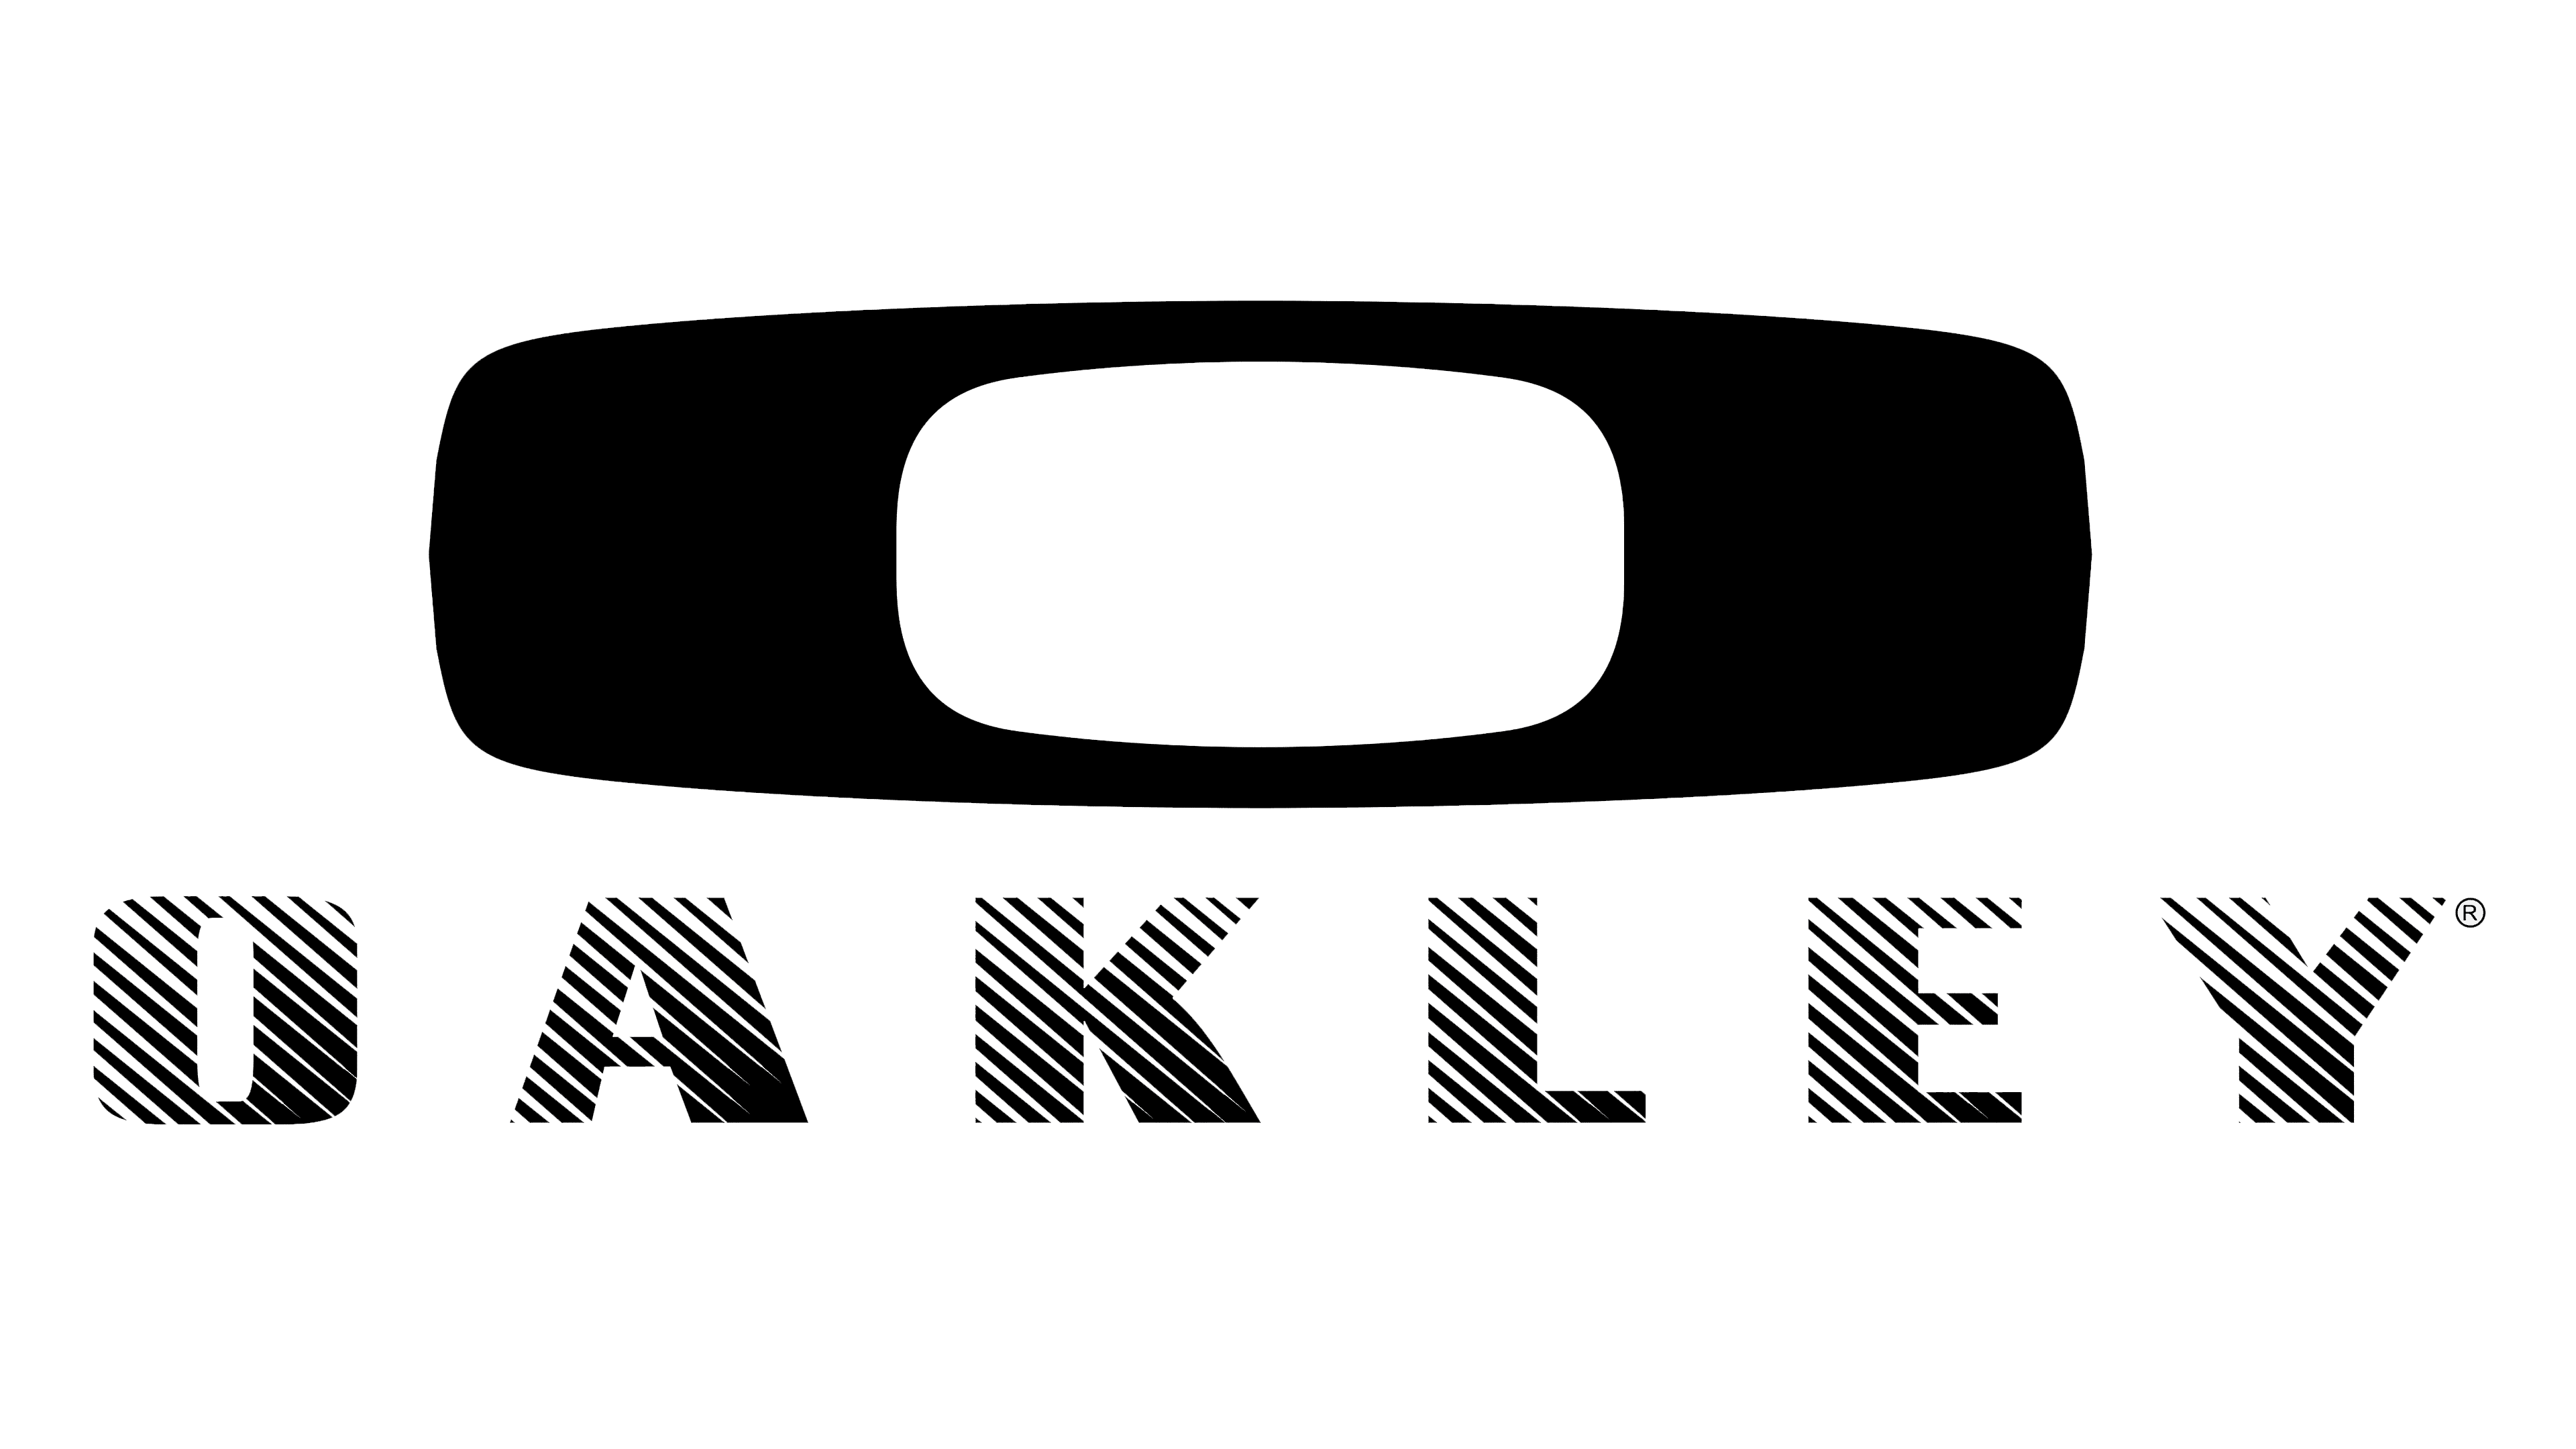 oakley side logo